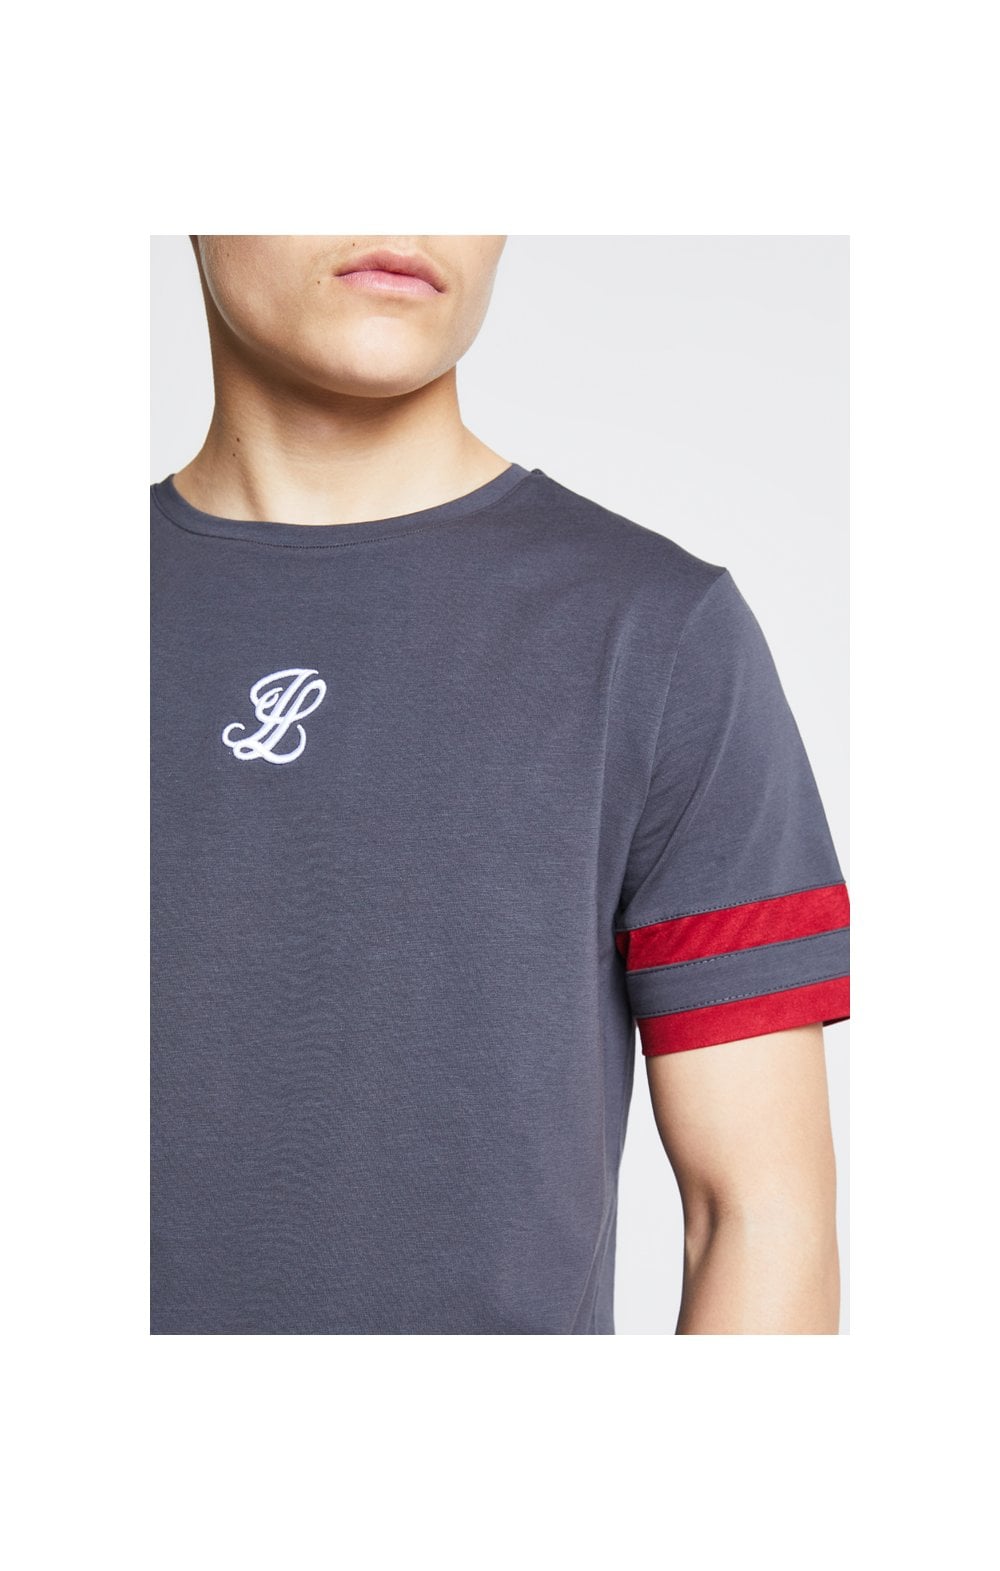 Illusive London T-Shirt Turnier - Grau und Rosa (1)